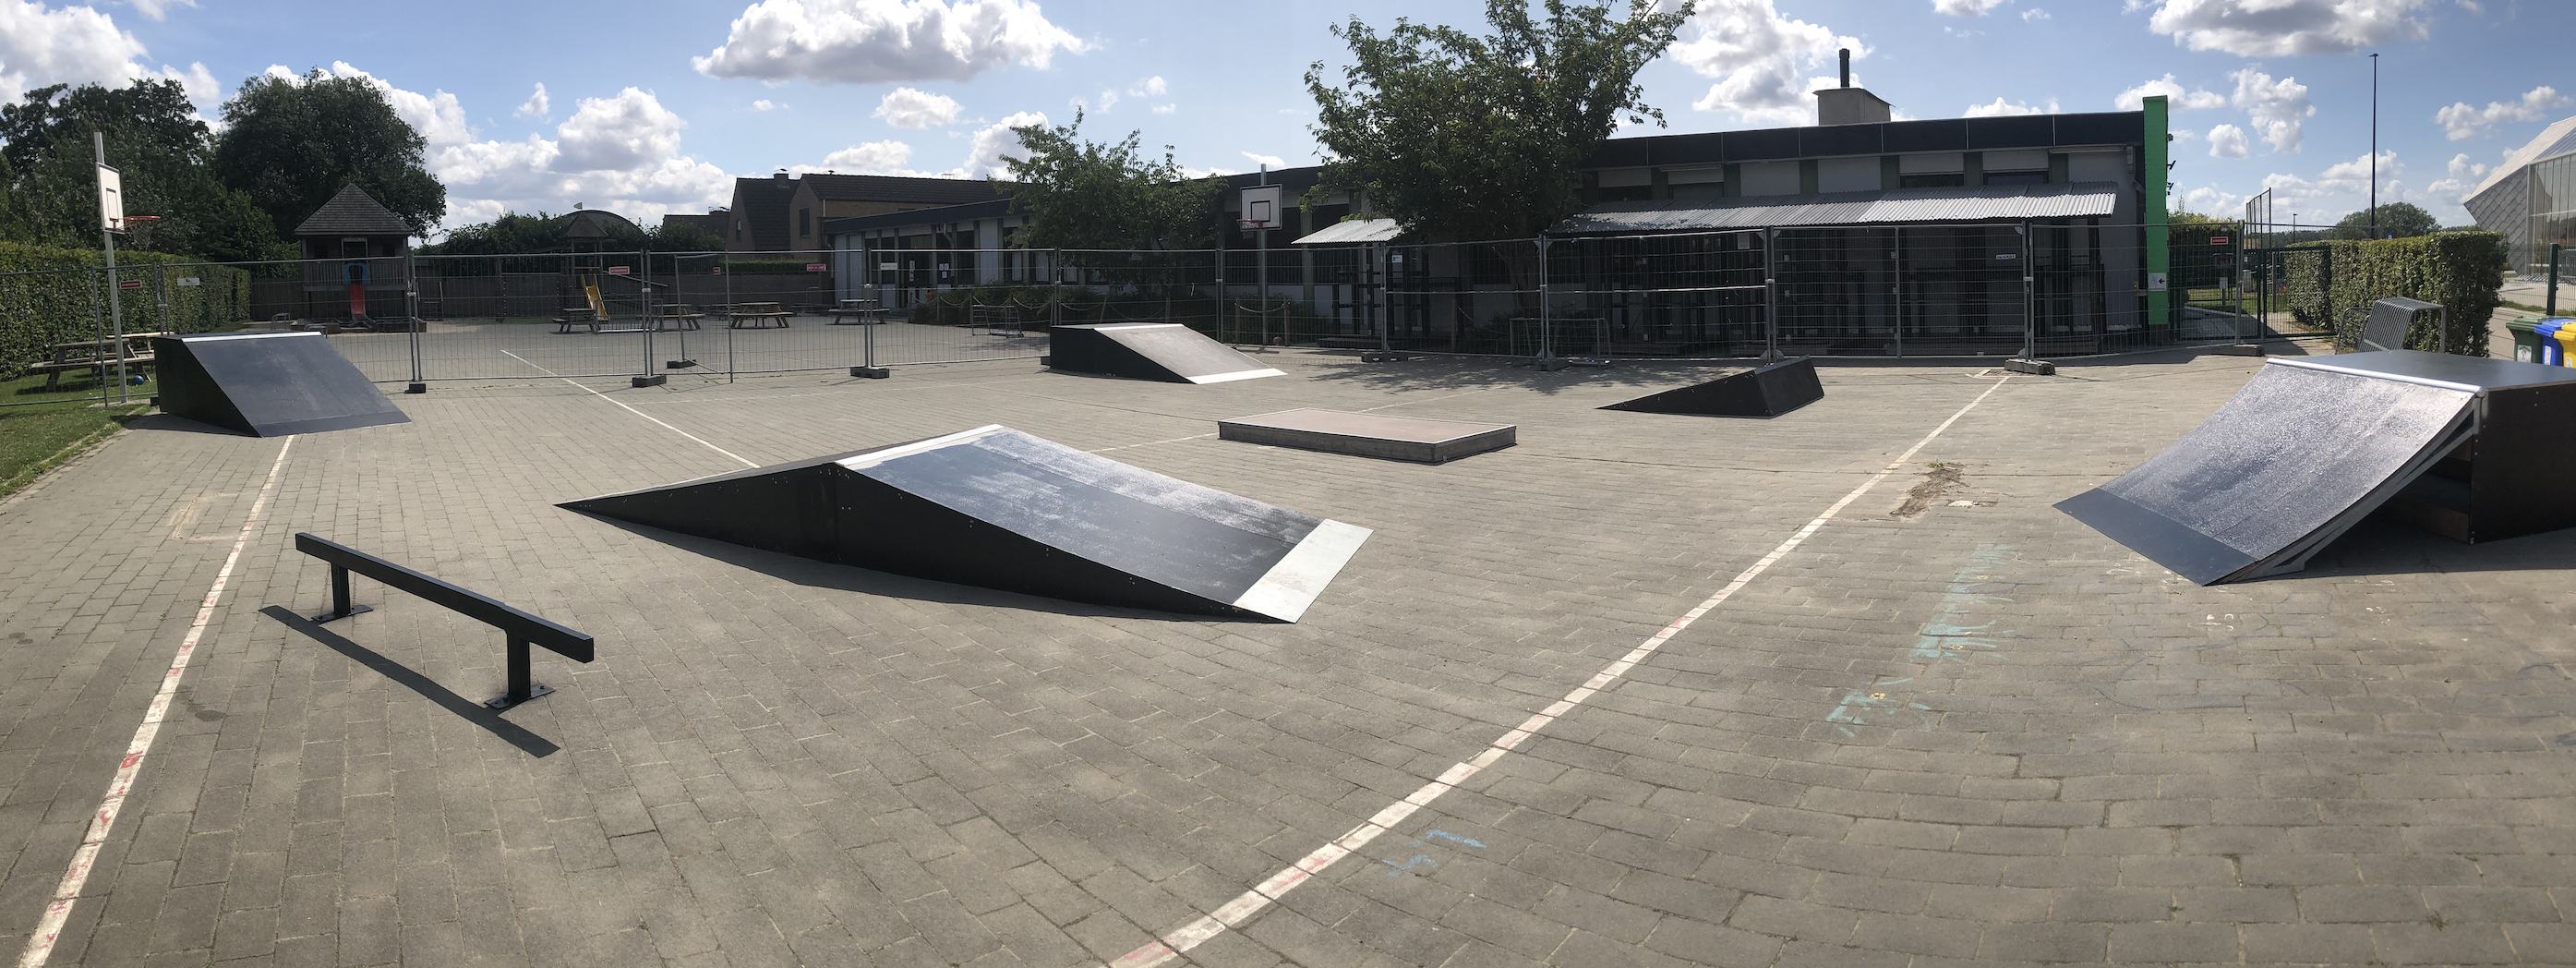 skatepark 3 